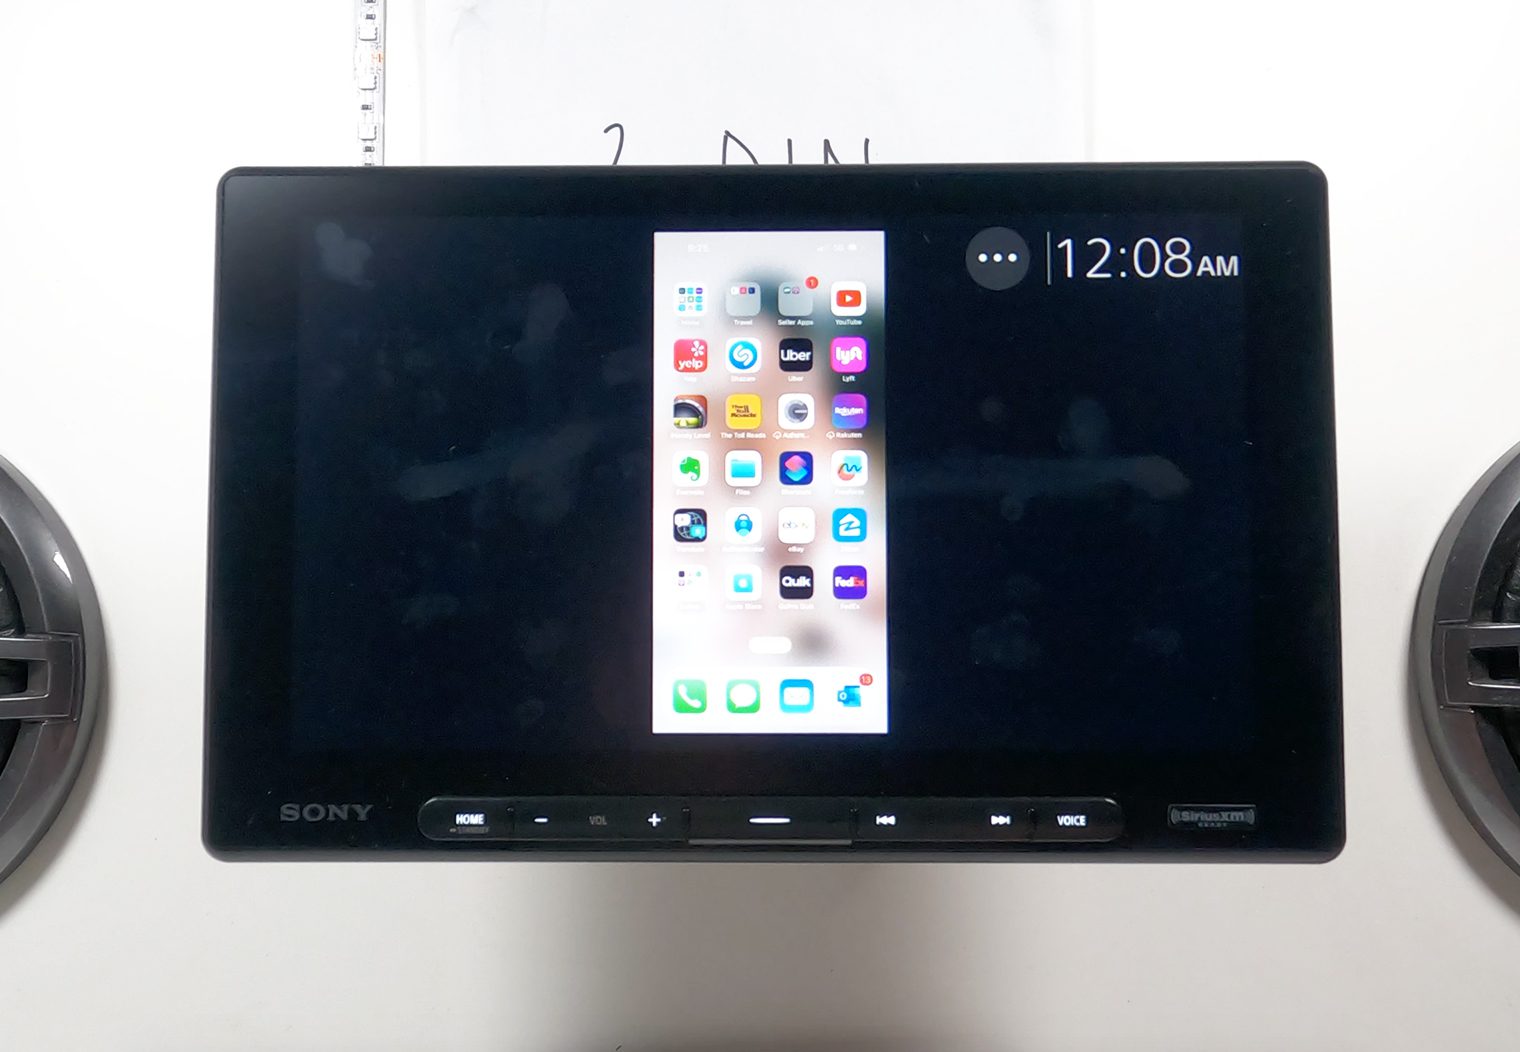 Sony XAV-AX8500 iPhone Mirror via HDMI